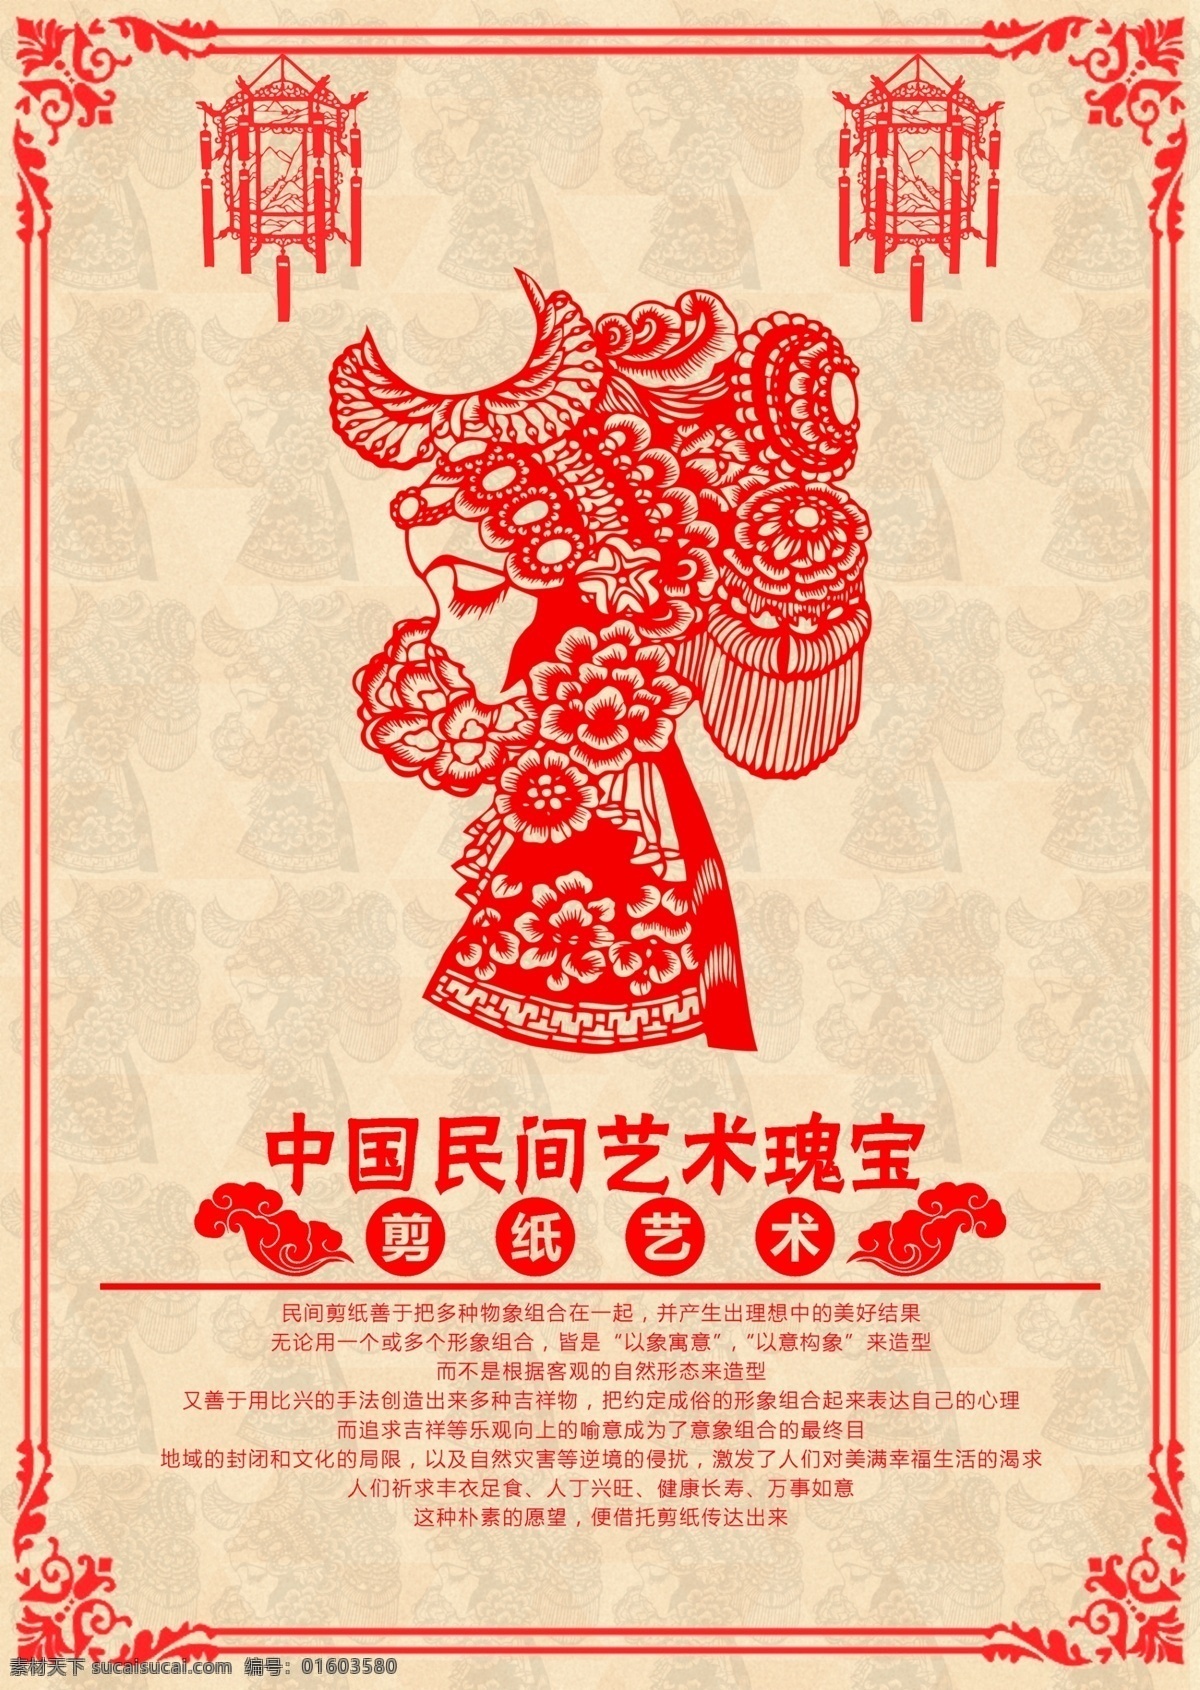 剪纸 妹子 版 剩下 有空 再 传 中国剪纸 民间艺术 海报 剪纸妹子 中国瑰宝 好难想啊 黄色